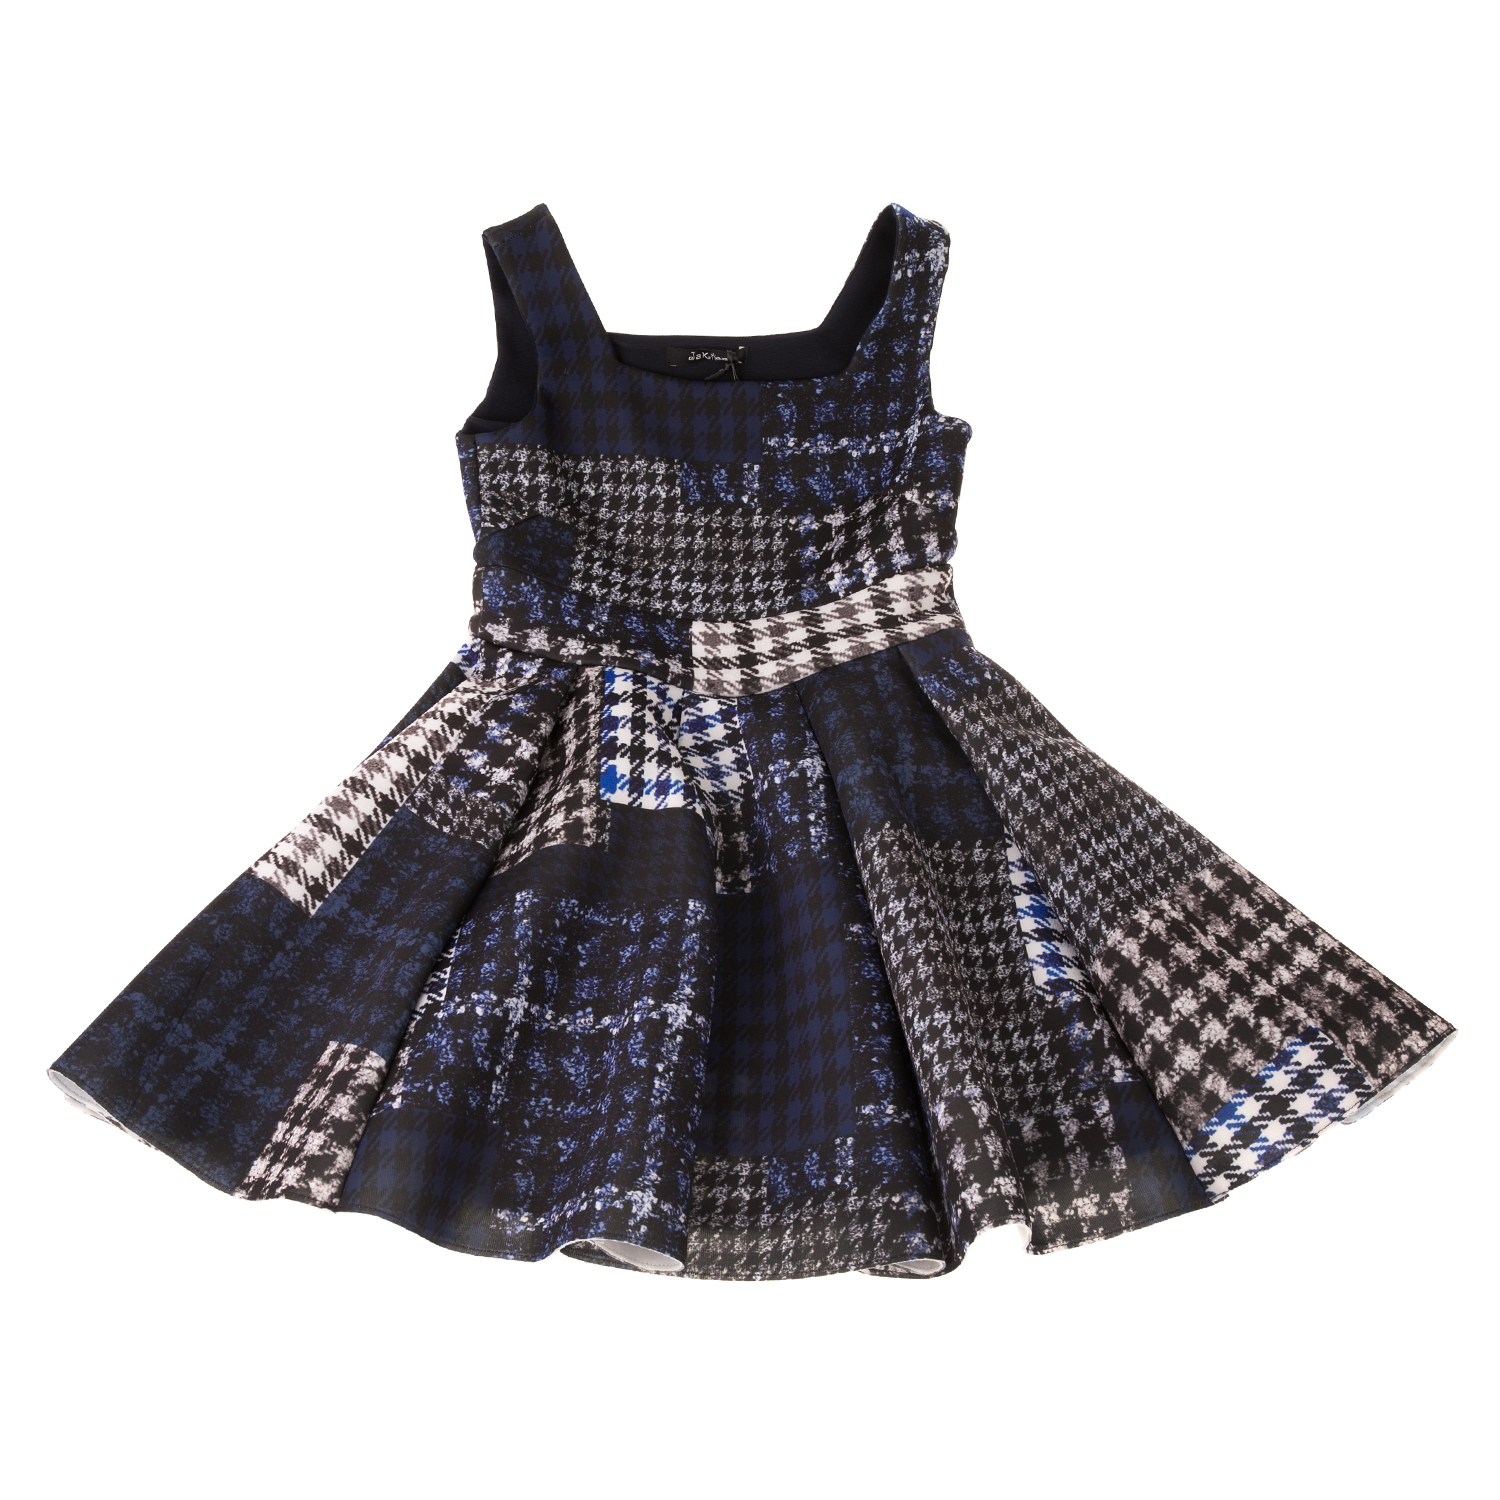 Παιδικά/Girls/Ρούχα/Φορέματα Κοντομάνικα-Αμάνικα JAKIOO - Παιδικό φόρεμα JAKIOO ABITO ROMA μπλε-εκρού